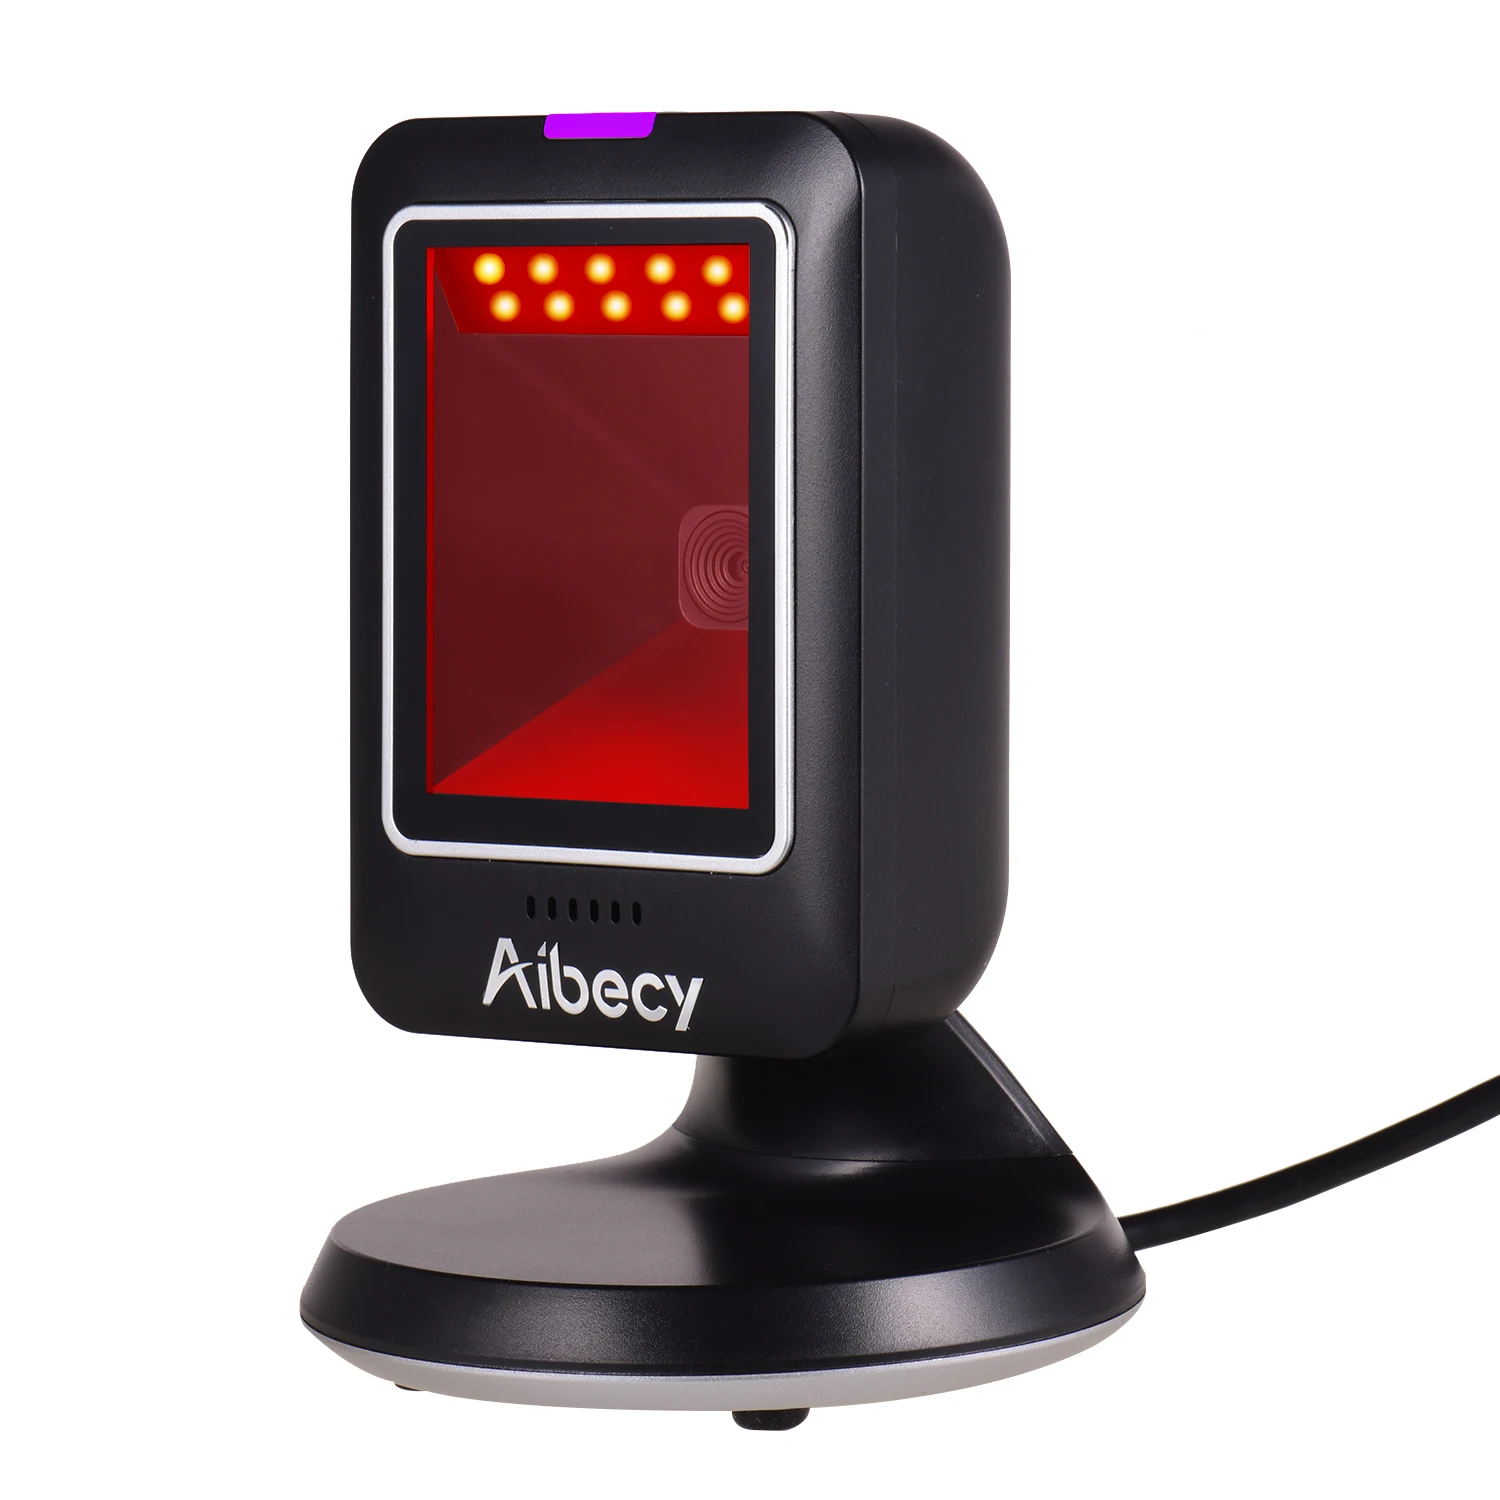 Aibecy MP6300Y 1D/2D/QR Всенаправленный сканер штрихкодов USB проводной считыватель штрих-кодов CMOS изображение без рук